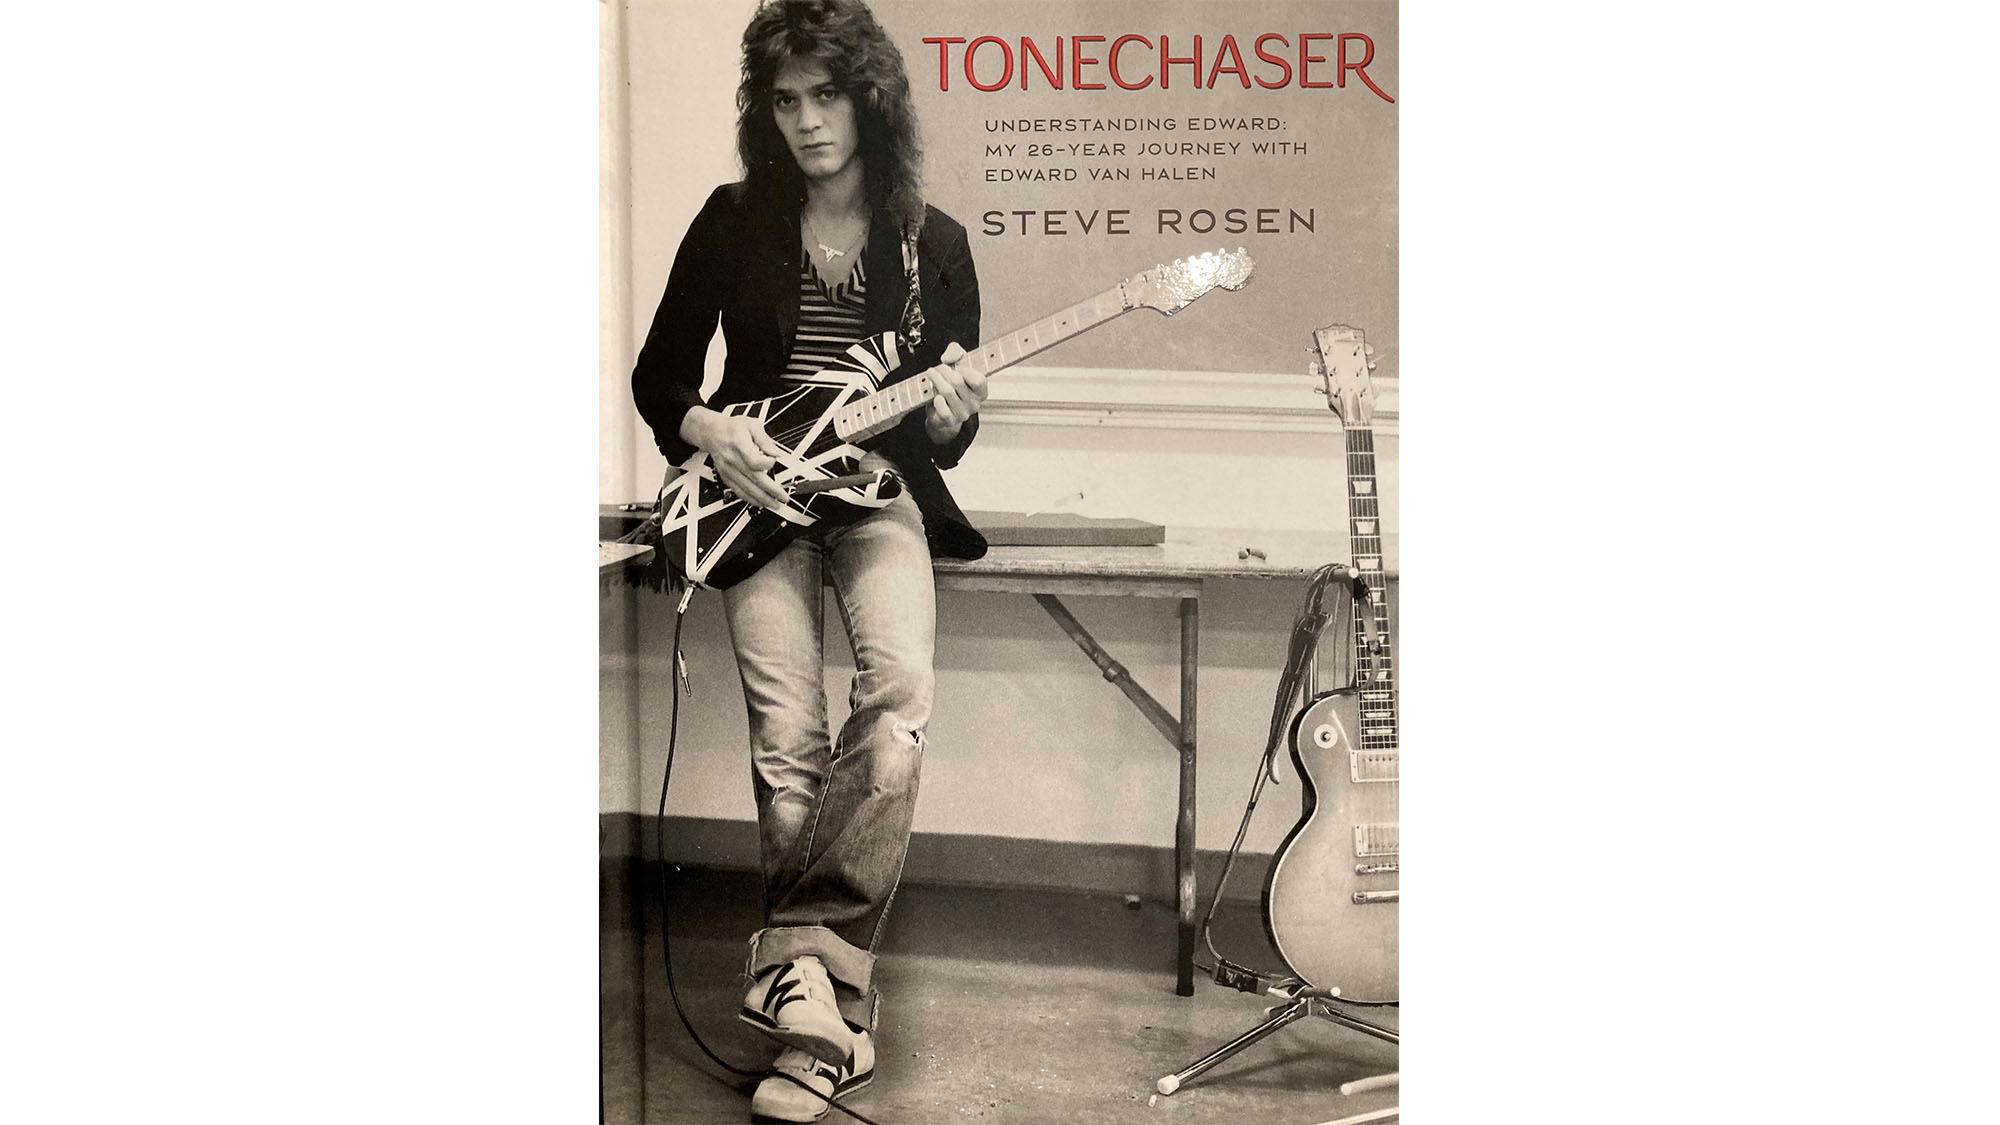 The cover of Steve Rosen's book, Tonechaser